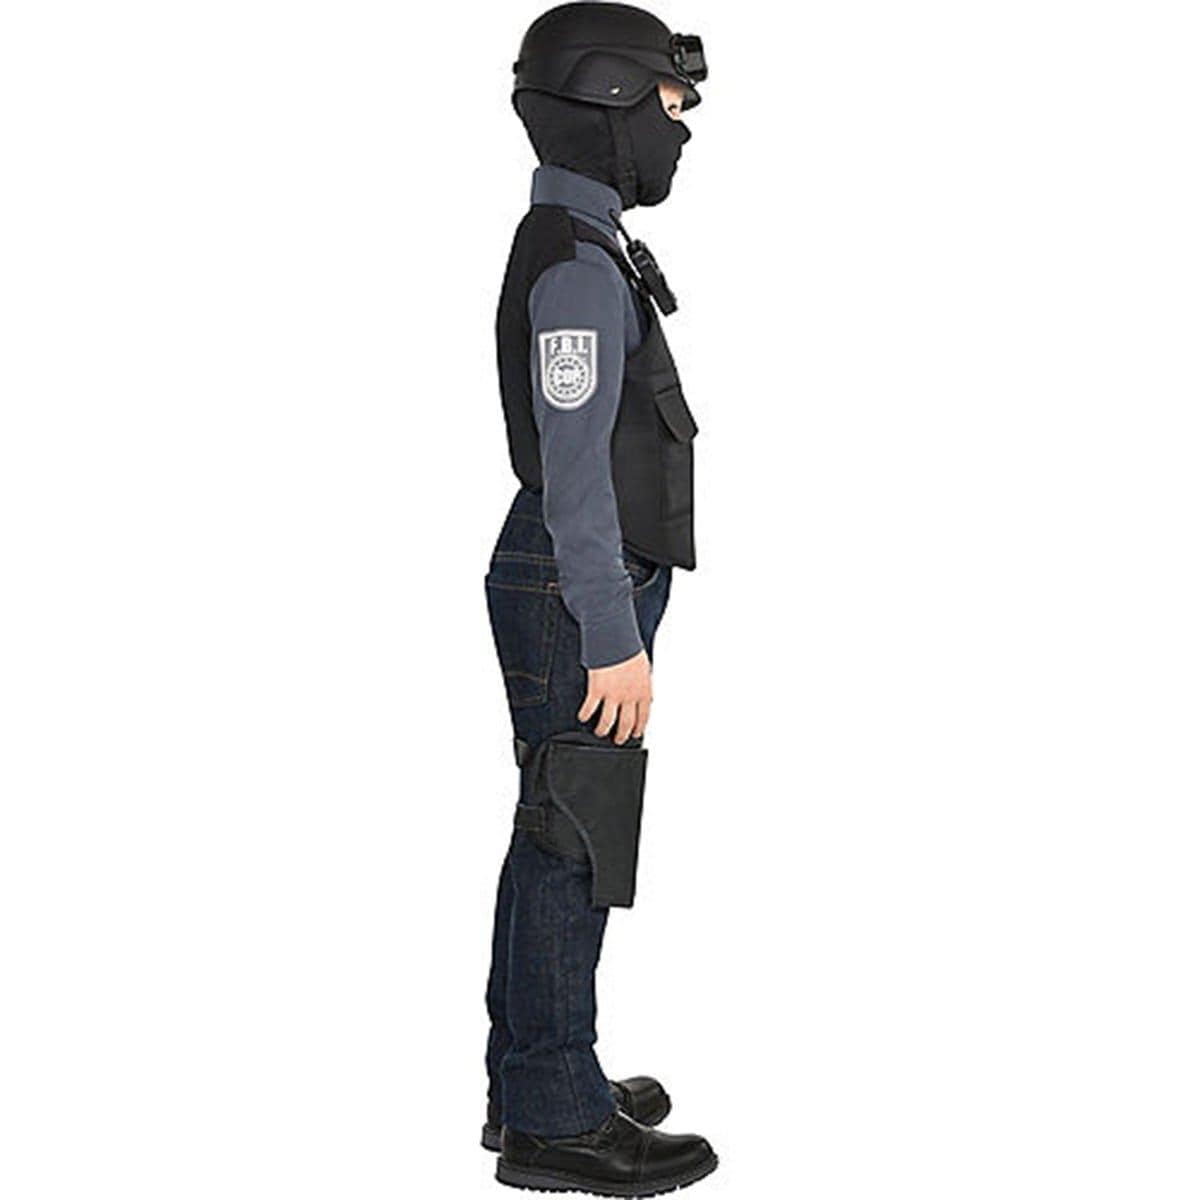 Kit de costume et de jeu de rôle d'agent de police pour enfants